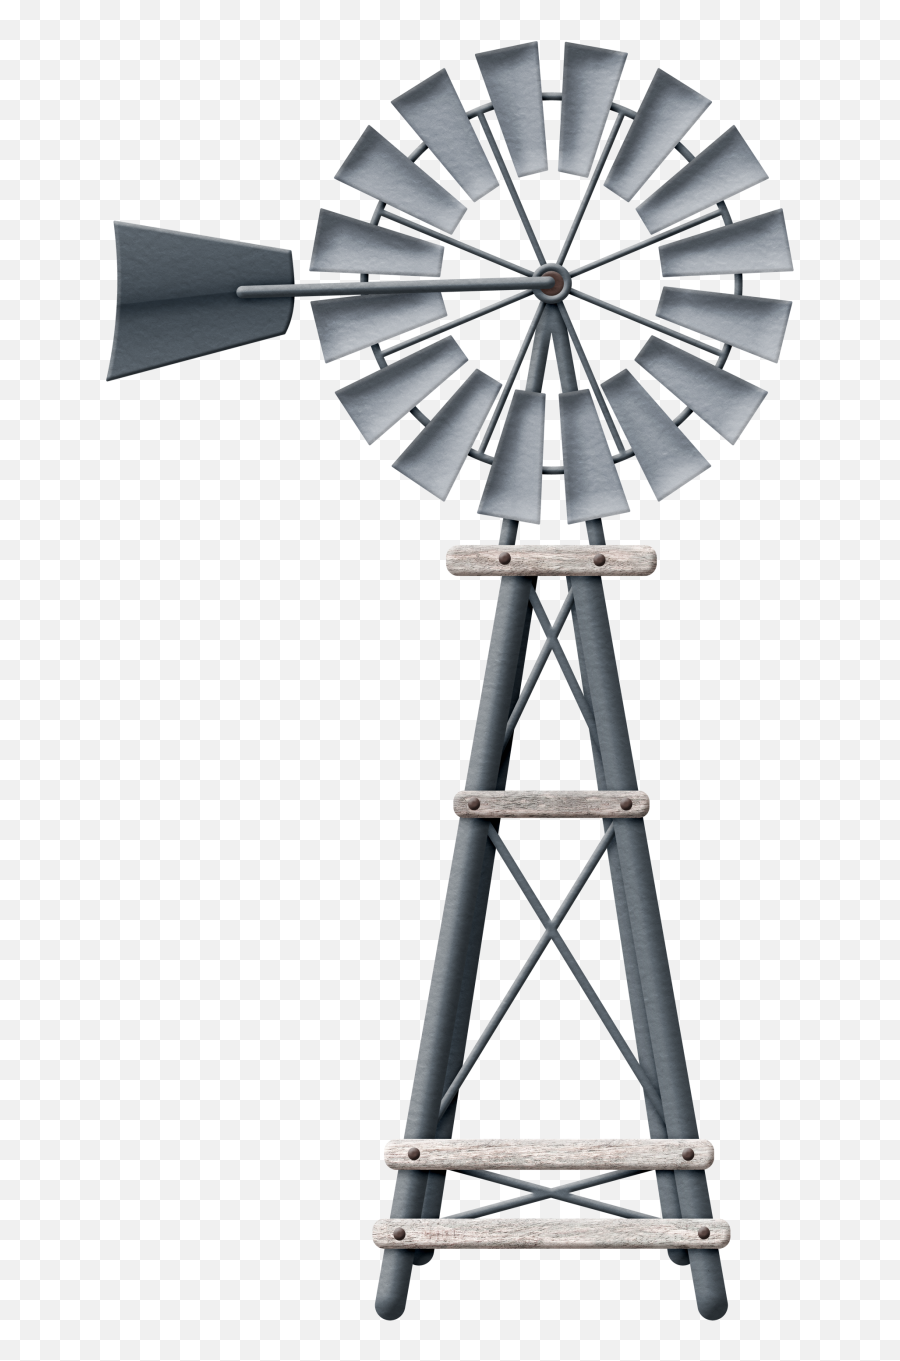 Farm Clipart Windmill - Old Farm Windmill Clipart Png,Windmill Png